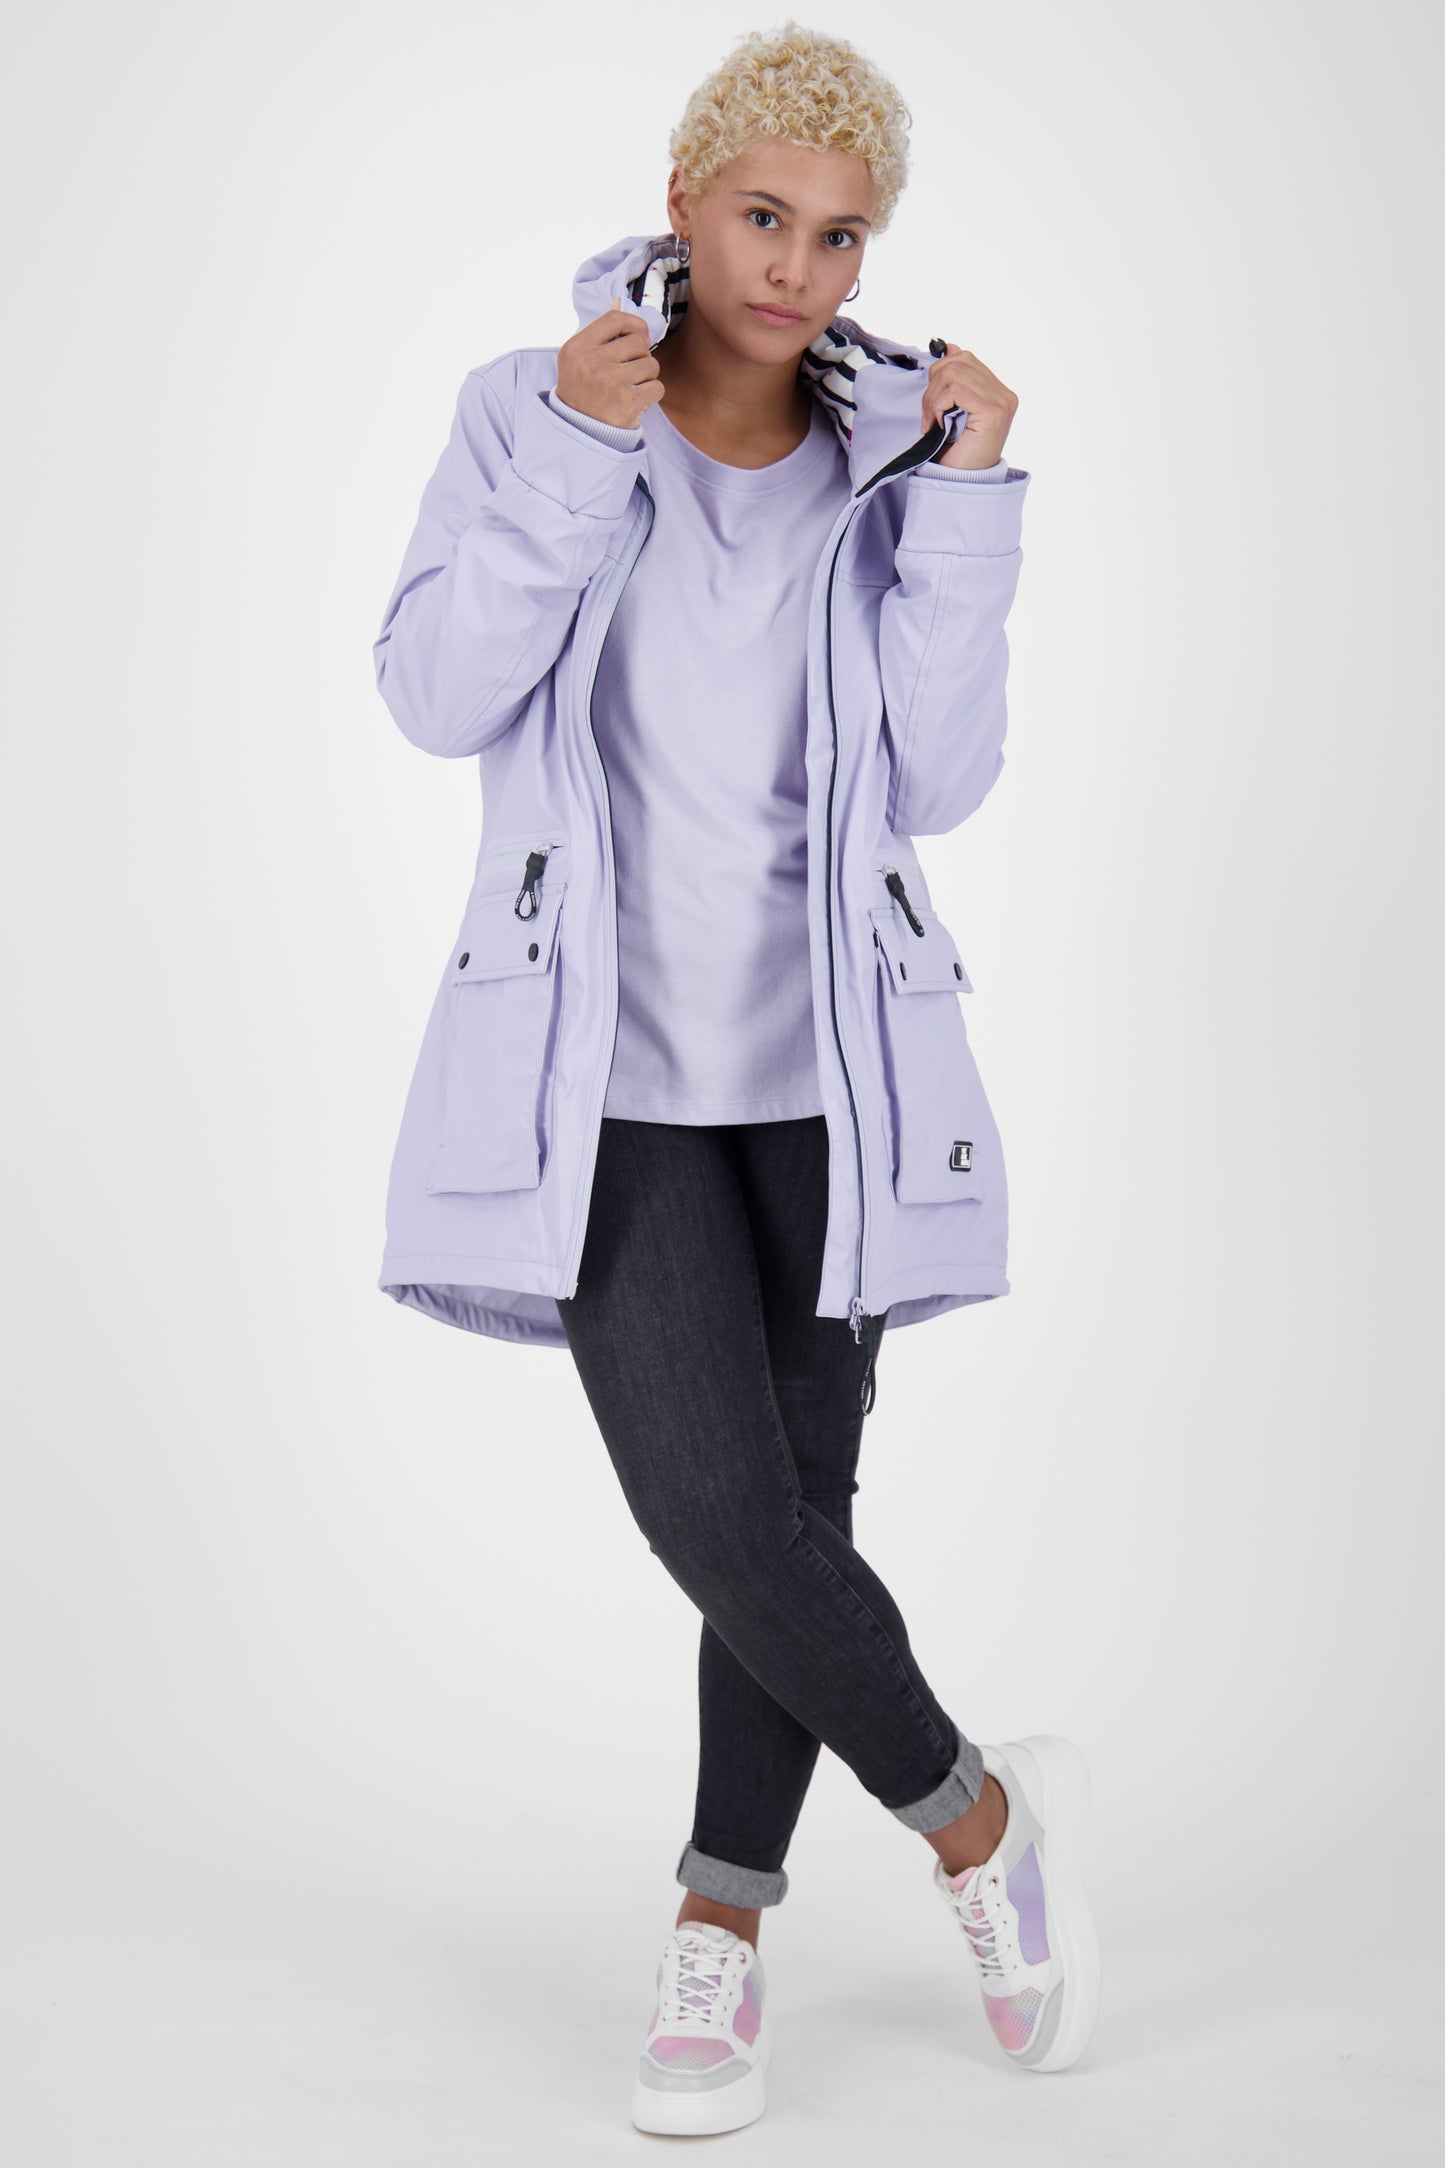 Regenmantel AudreyAK A - warm & modisch in bunten Farben Violett